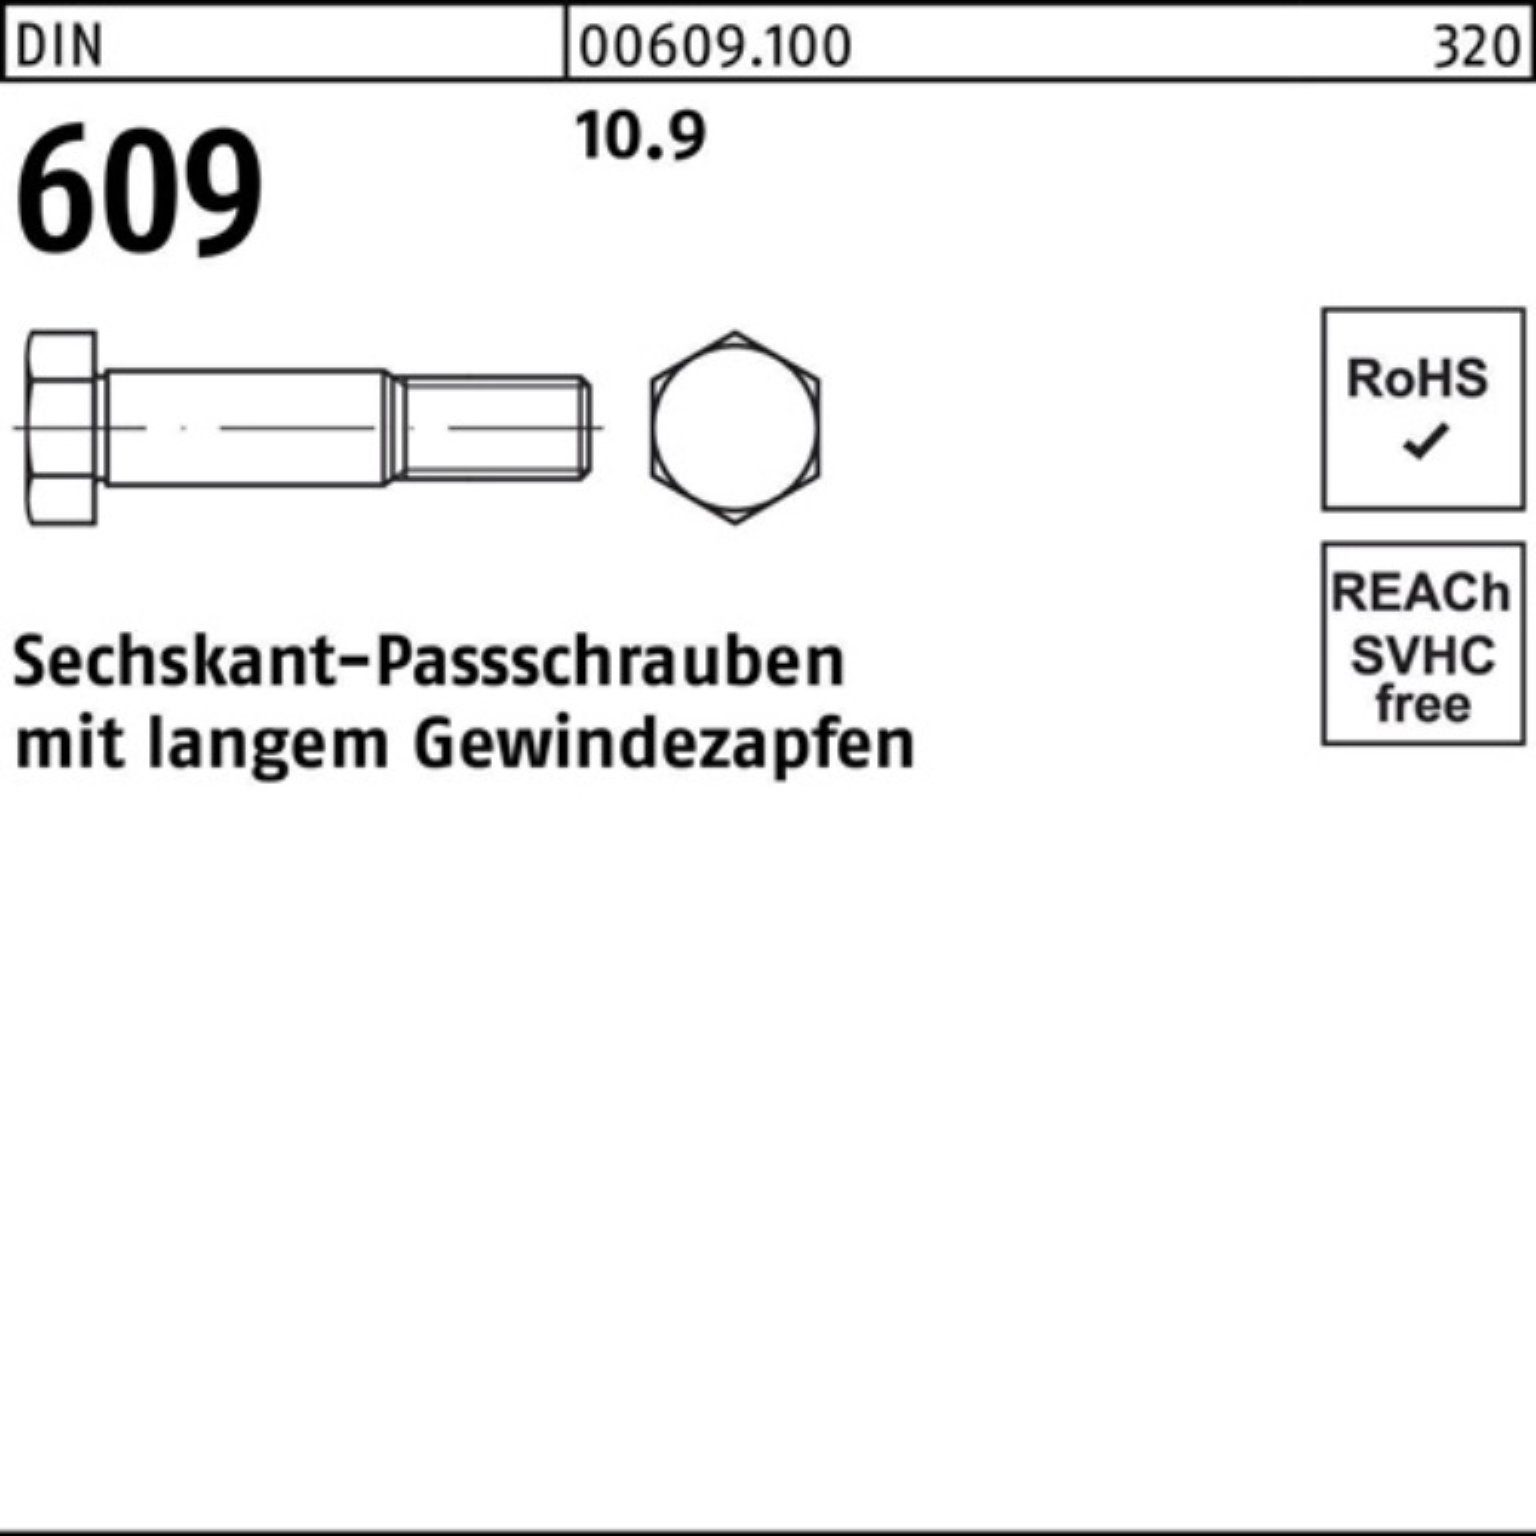 65 609 Schraube Sechskantpassschraube DIN langem M24x Gewindezapfen Reyher Pack 100er